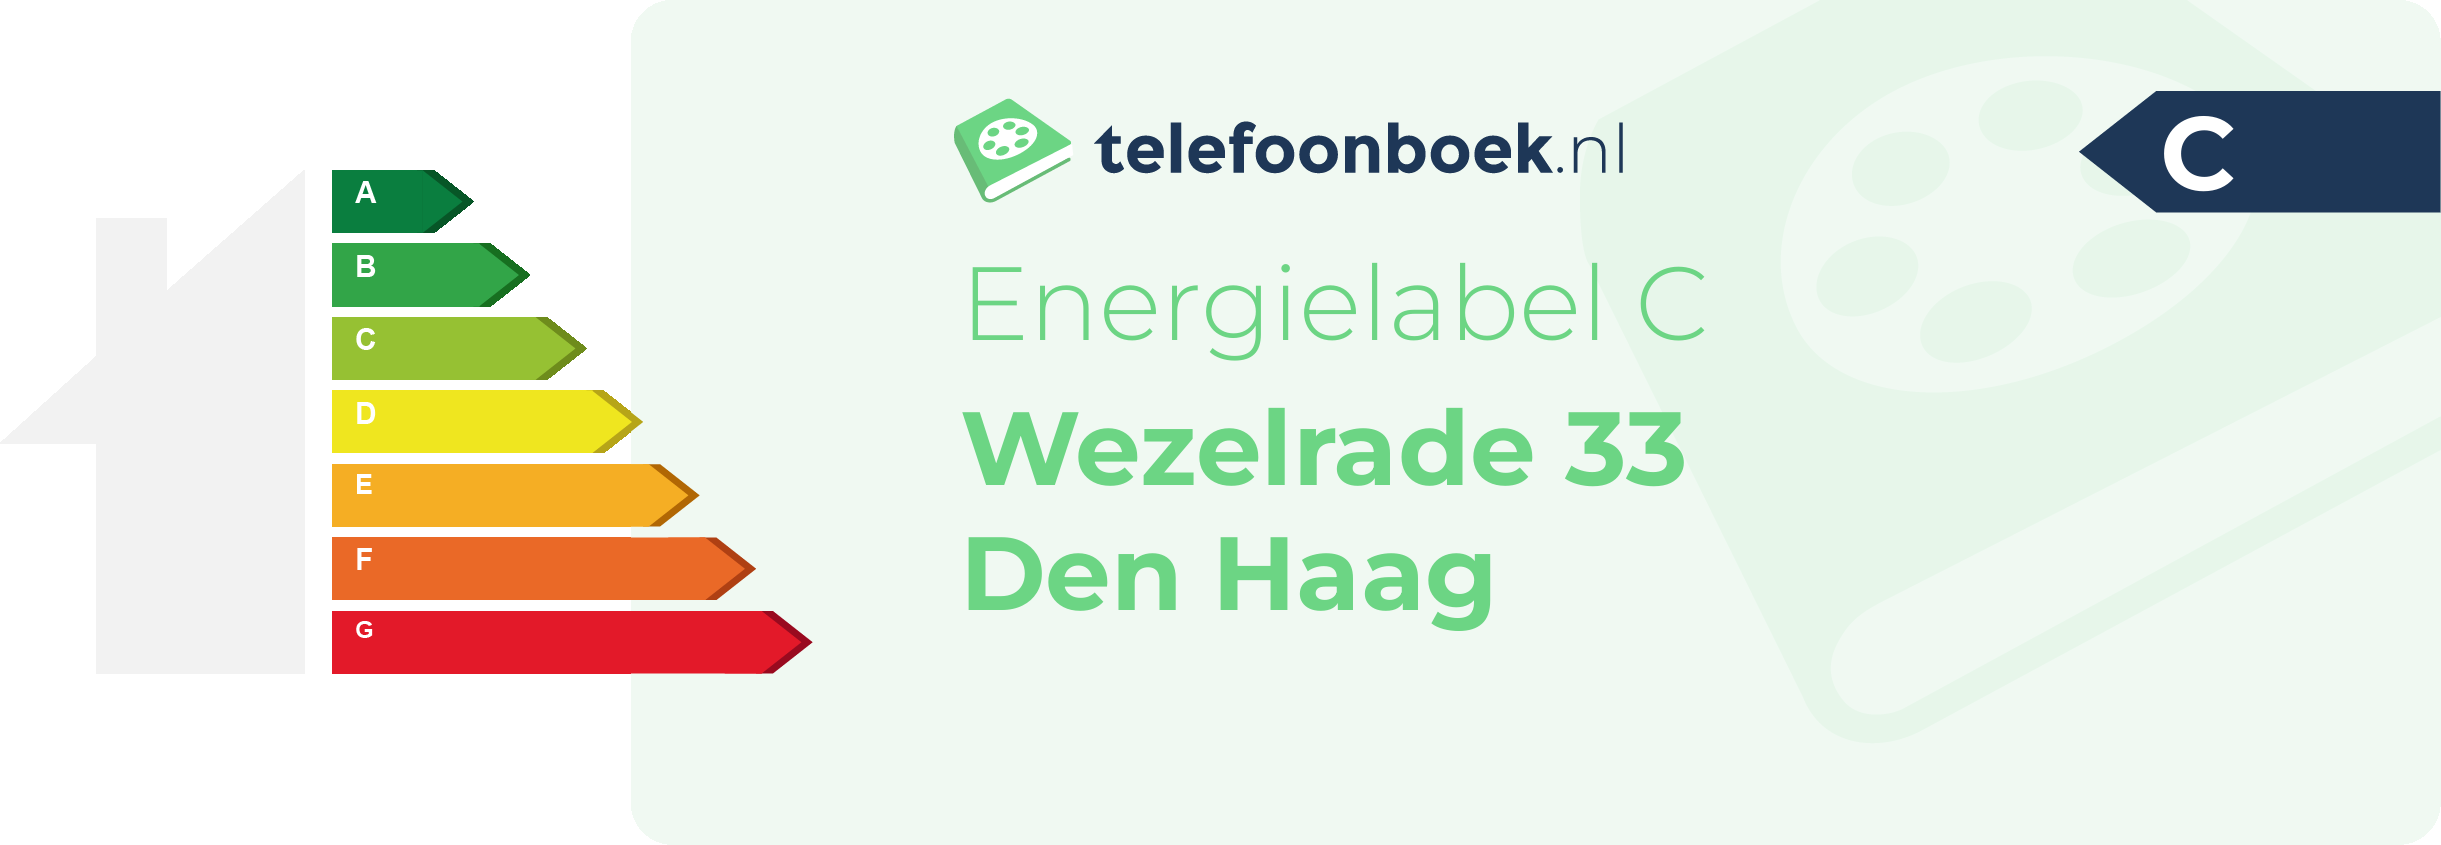 Energielabel Wezelrade 33 Den Haag